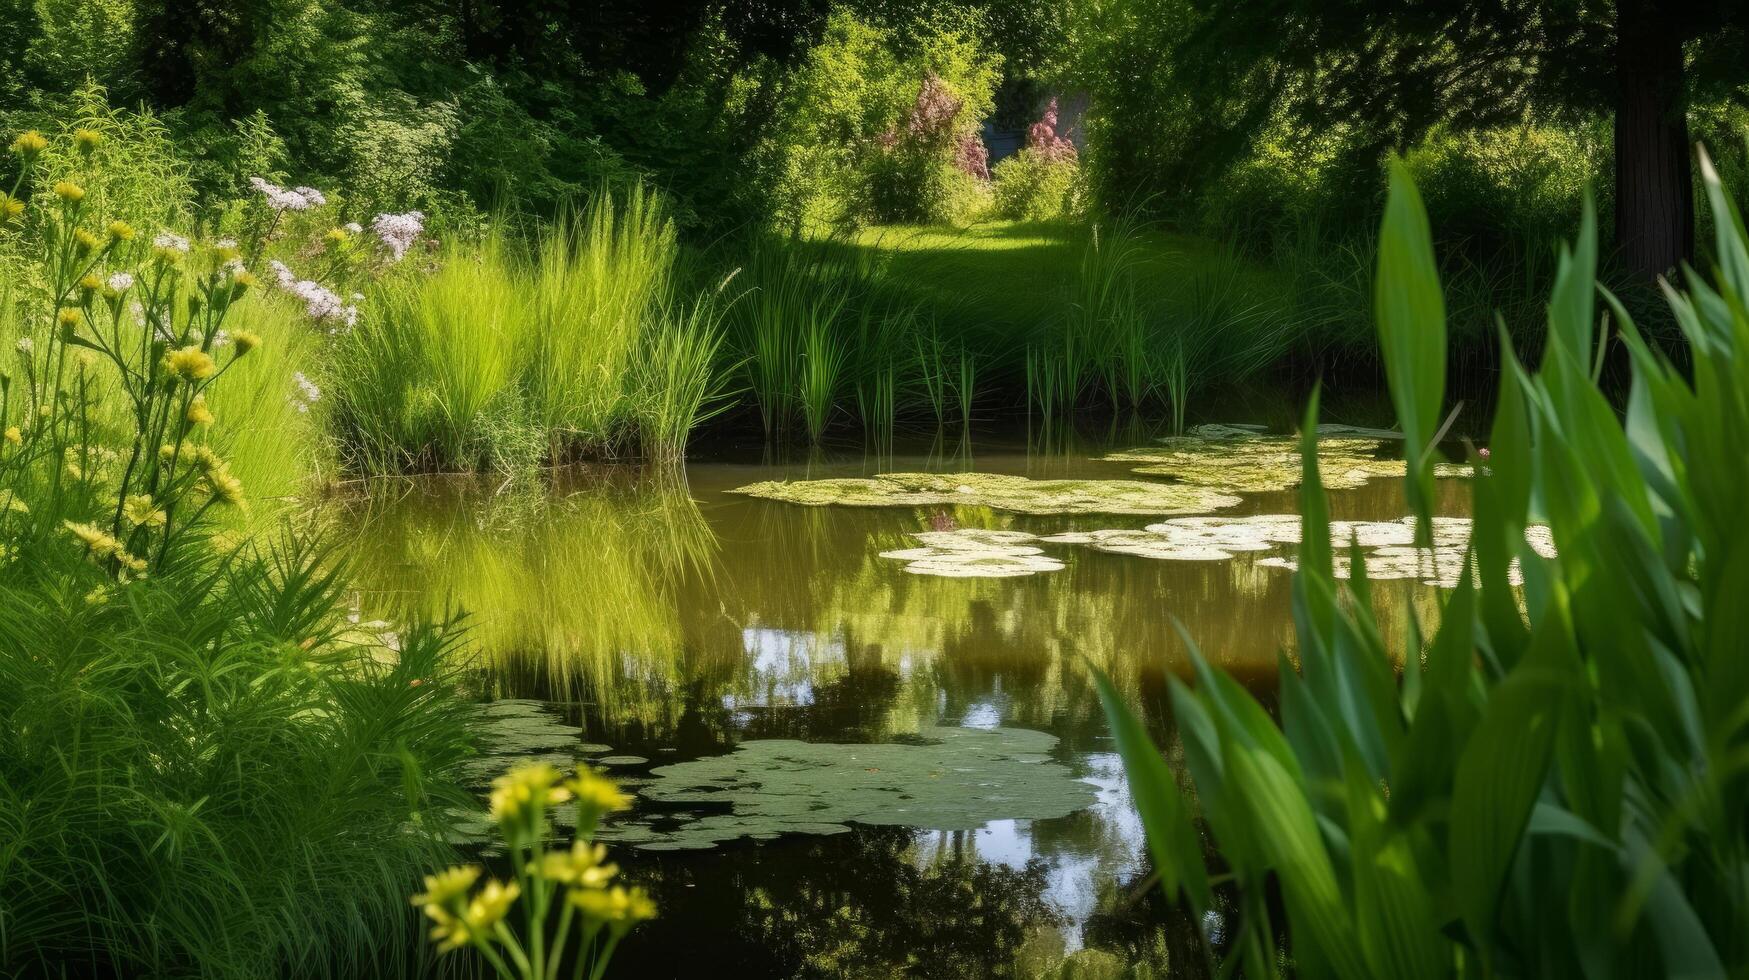 Pond in the summer garden. Illustration photo